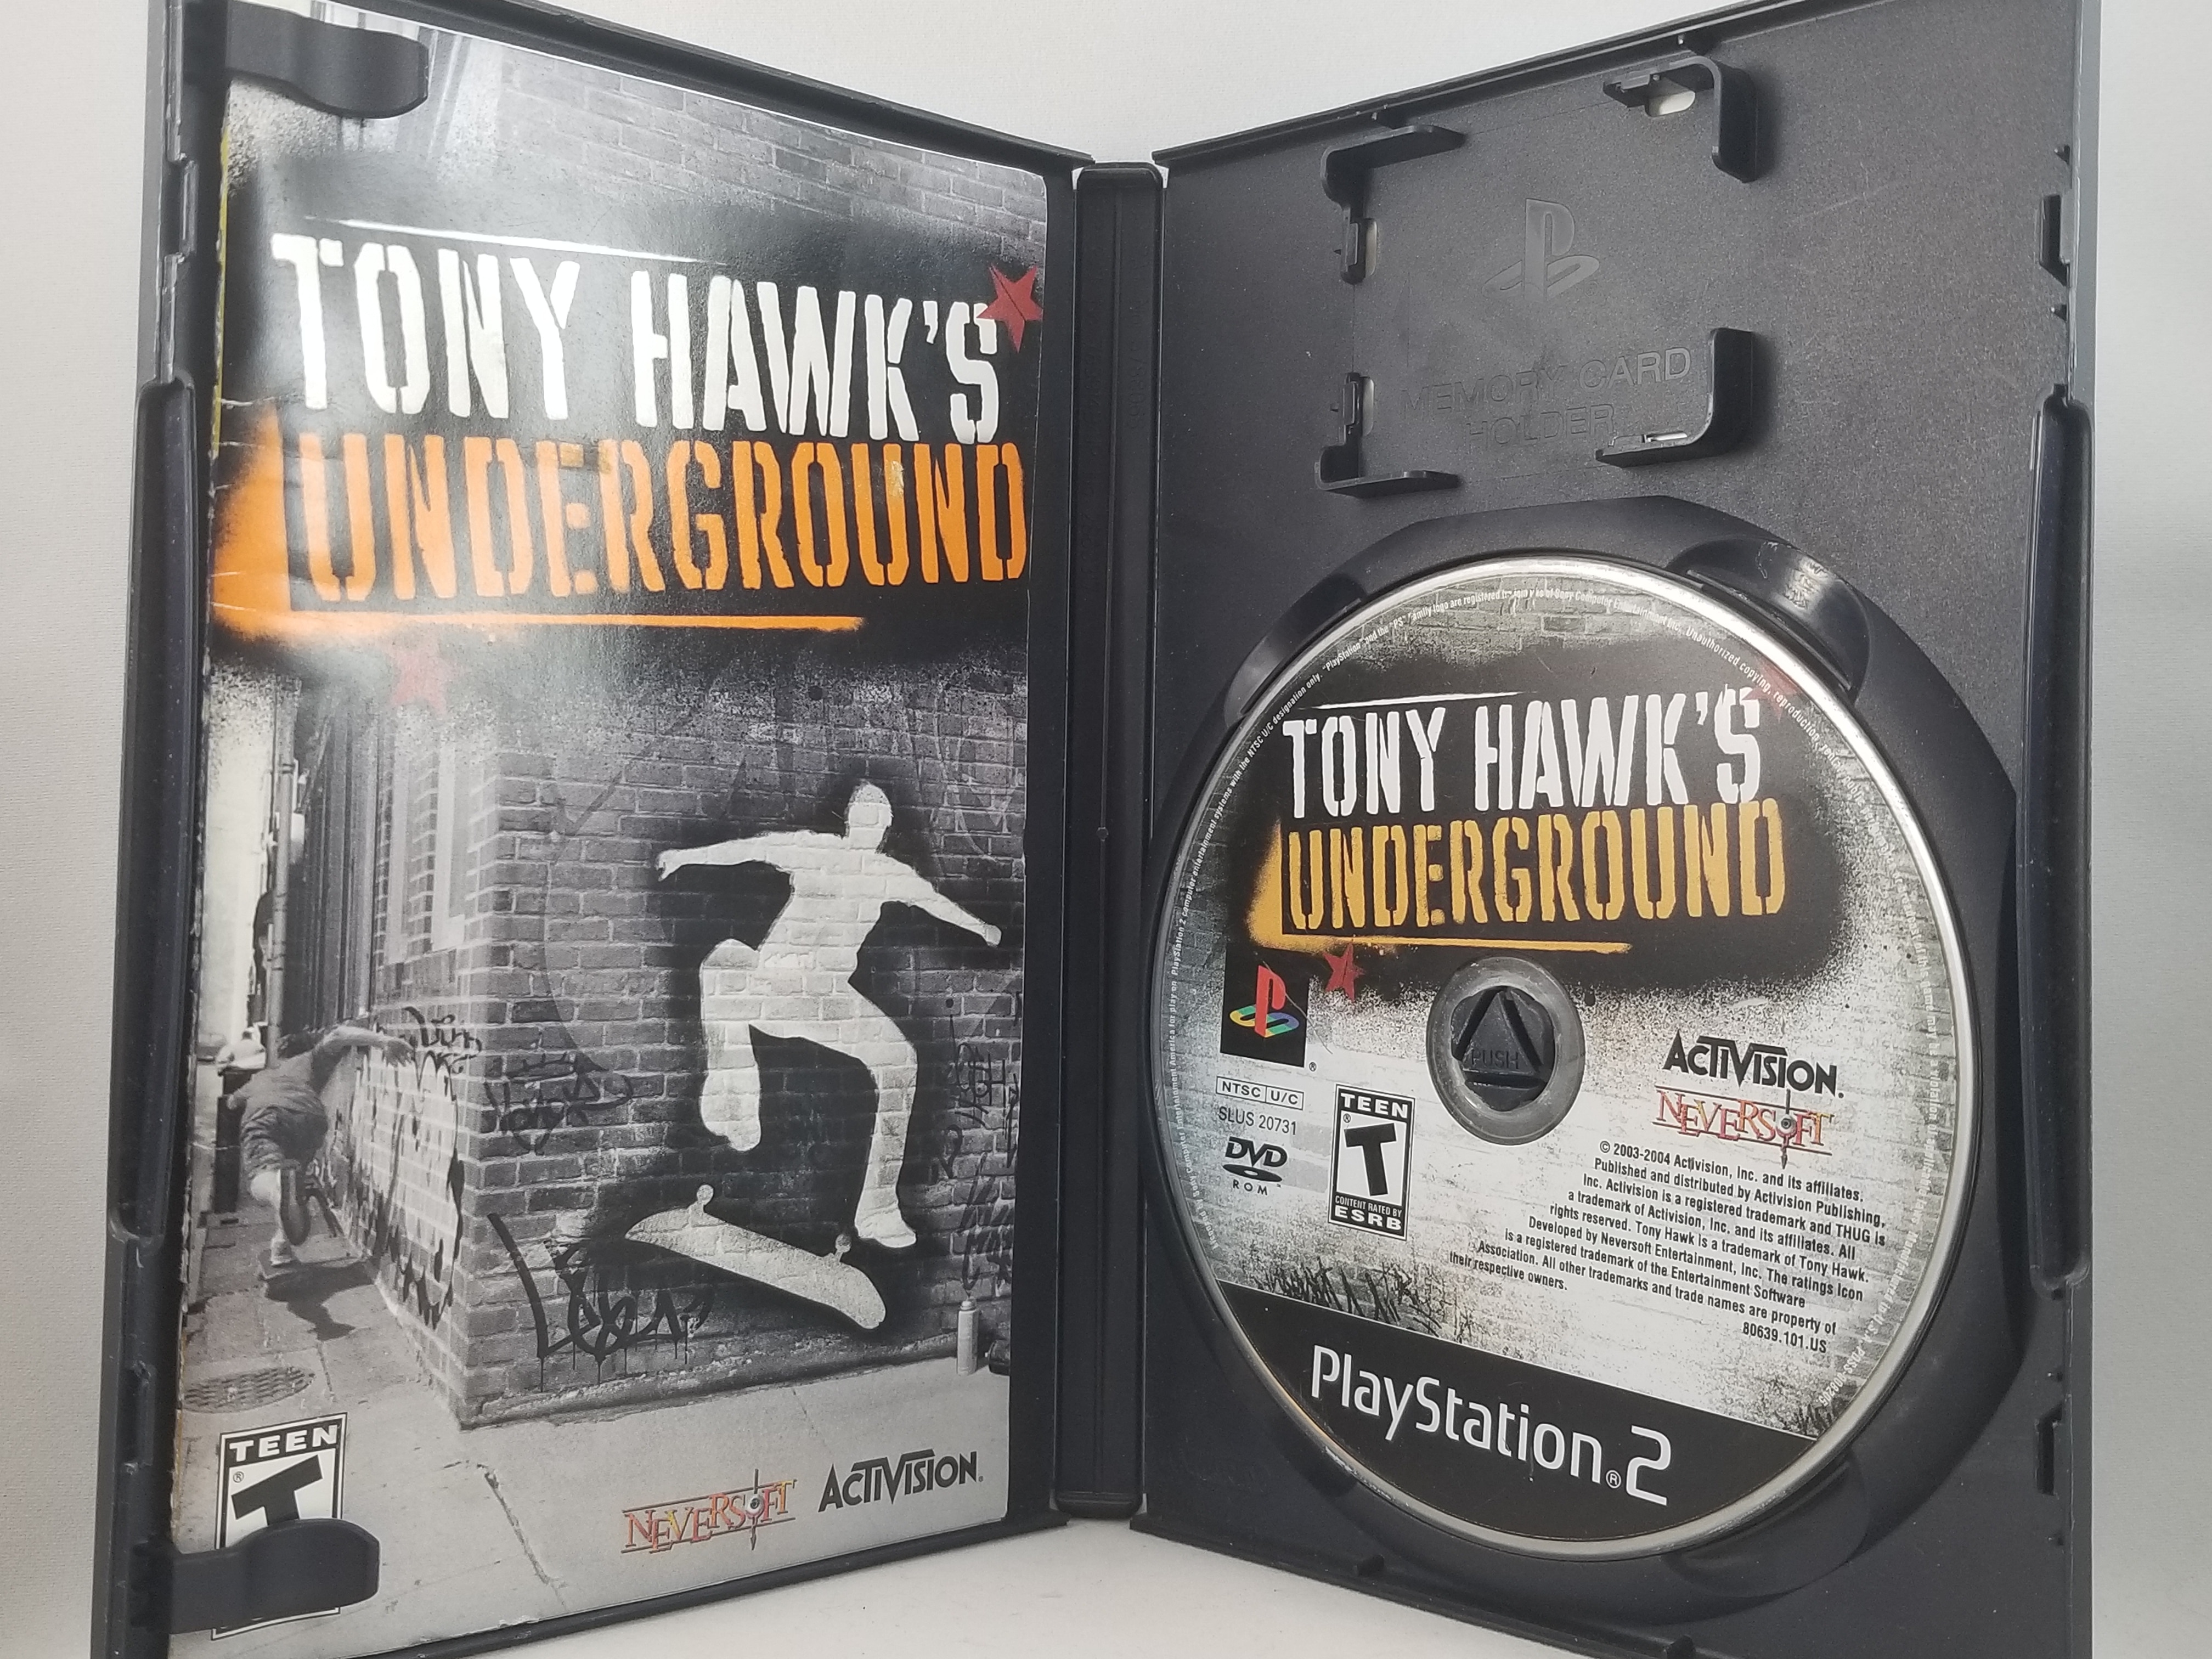 Tony Hawk's Underground - PlayStation 2 PS2 - CIB Sony